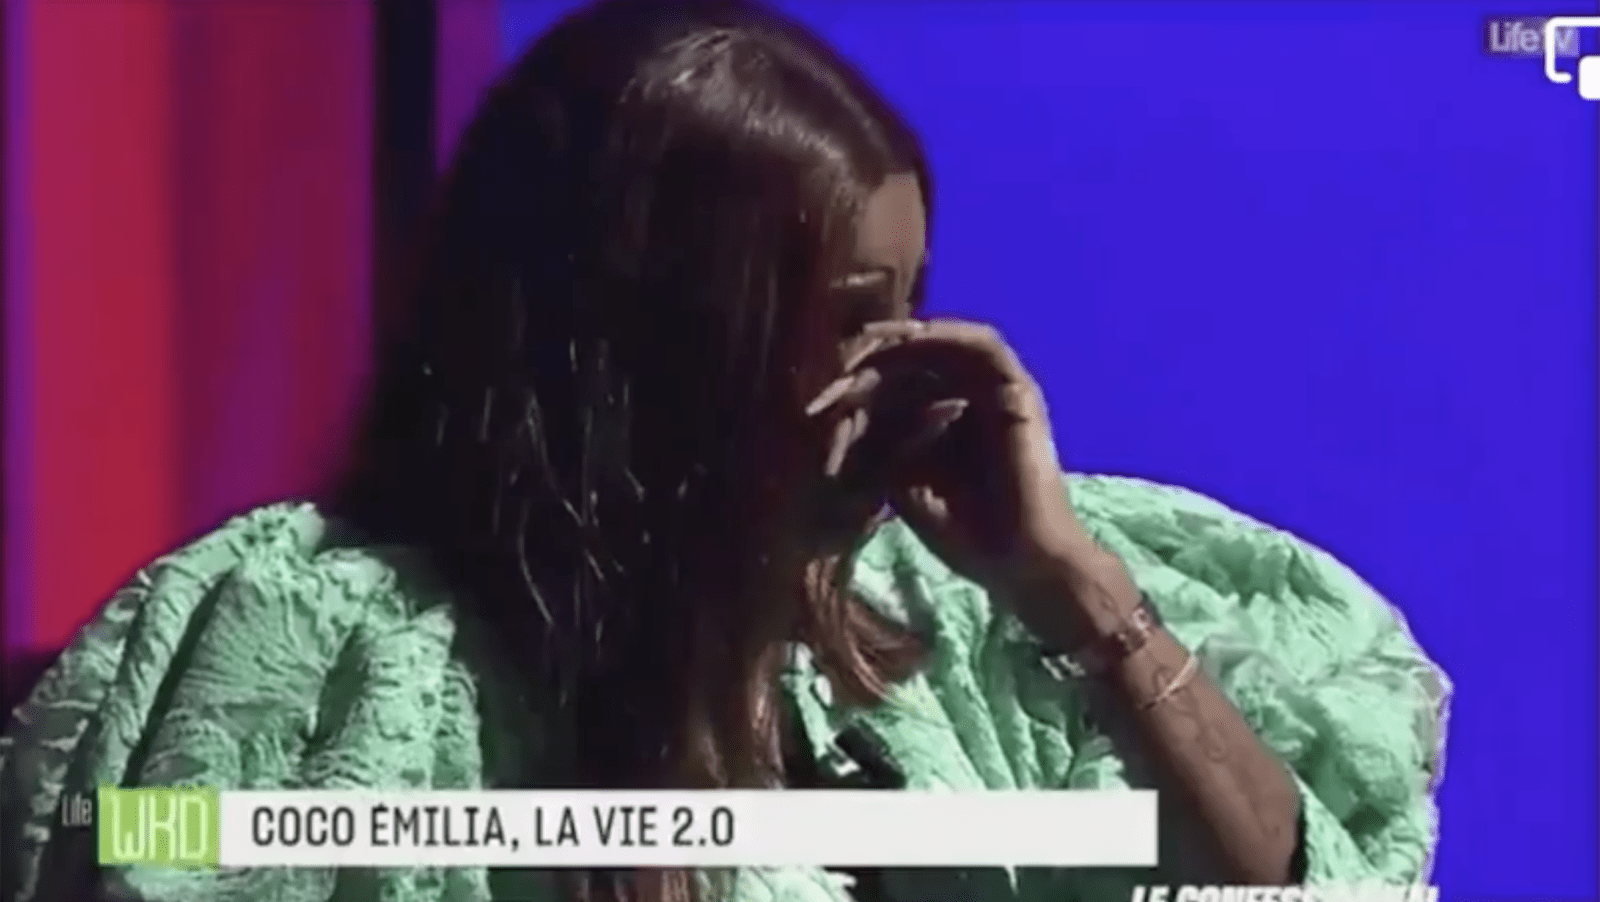 coco emilia fond en larme sur les plateaux de Life Tv